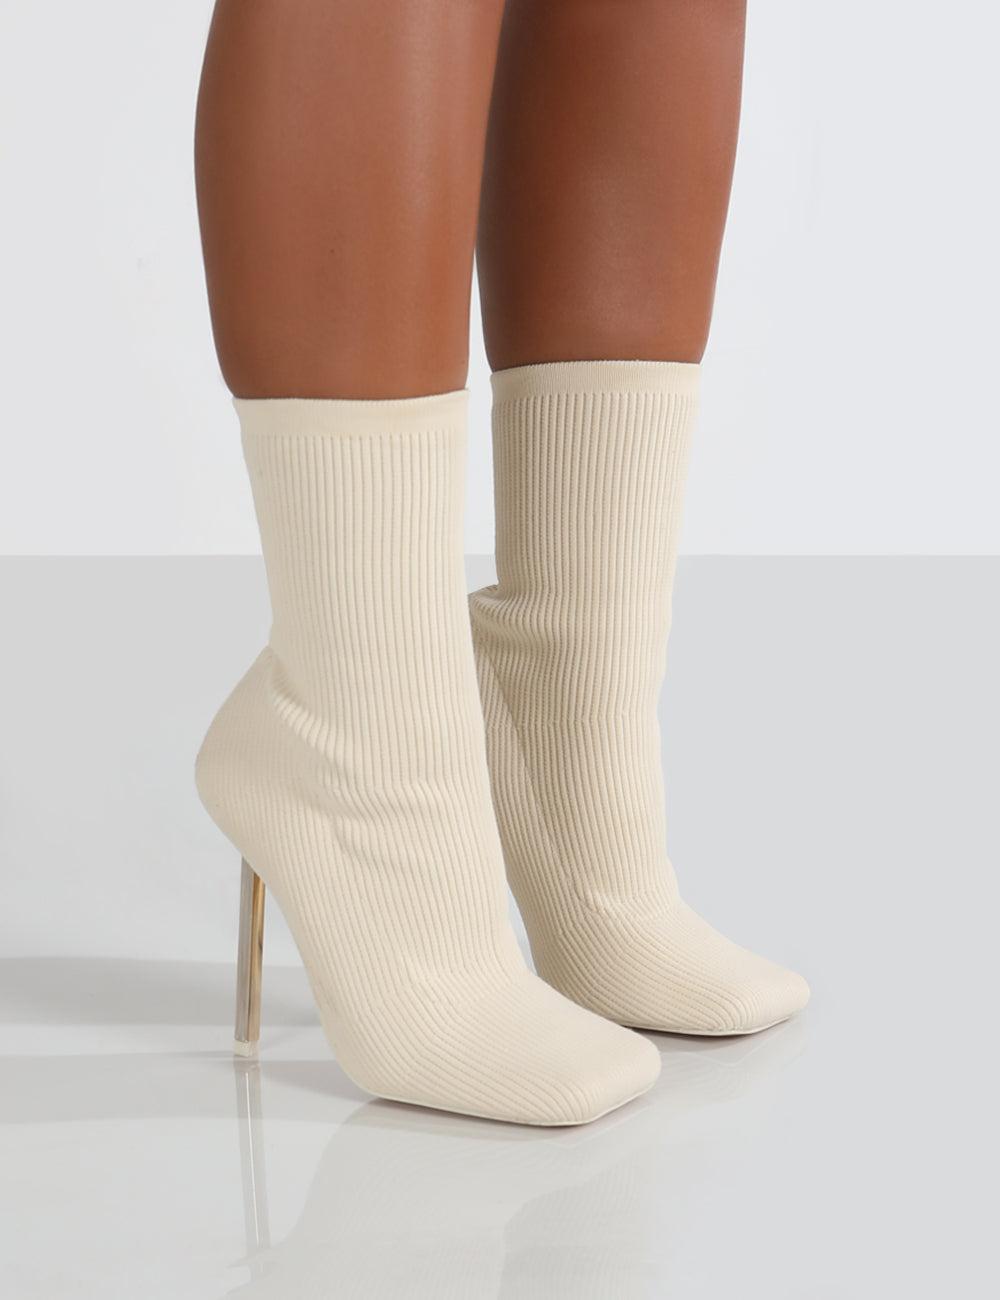 Public Desire Souffle Ecru Knit Stiletto Heel Sock Ankle Boot in Natural |  Lyst